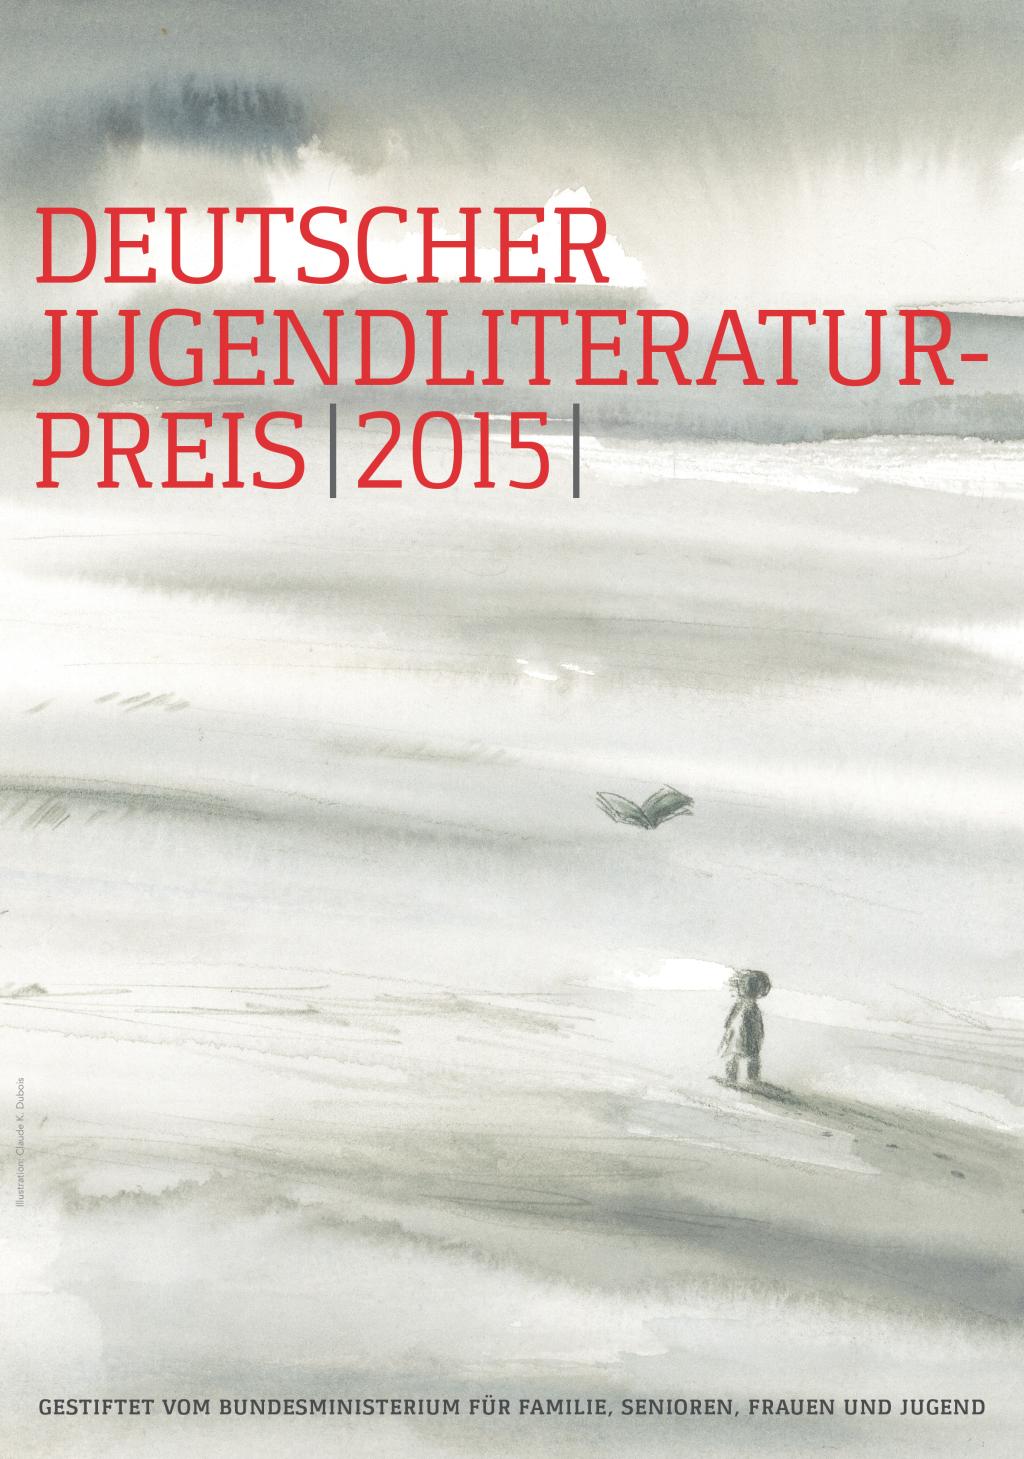 Deutscher Jugenliteraturpreis 2015 (c) Arbeitskreis für Jugendliteratur e.V. (Ersteller: Arbeitskreis für Jugendliteratur e.V.)